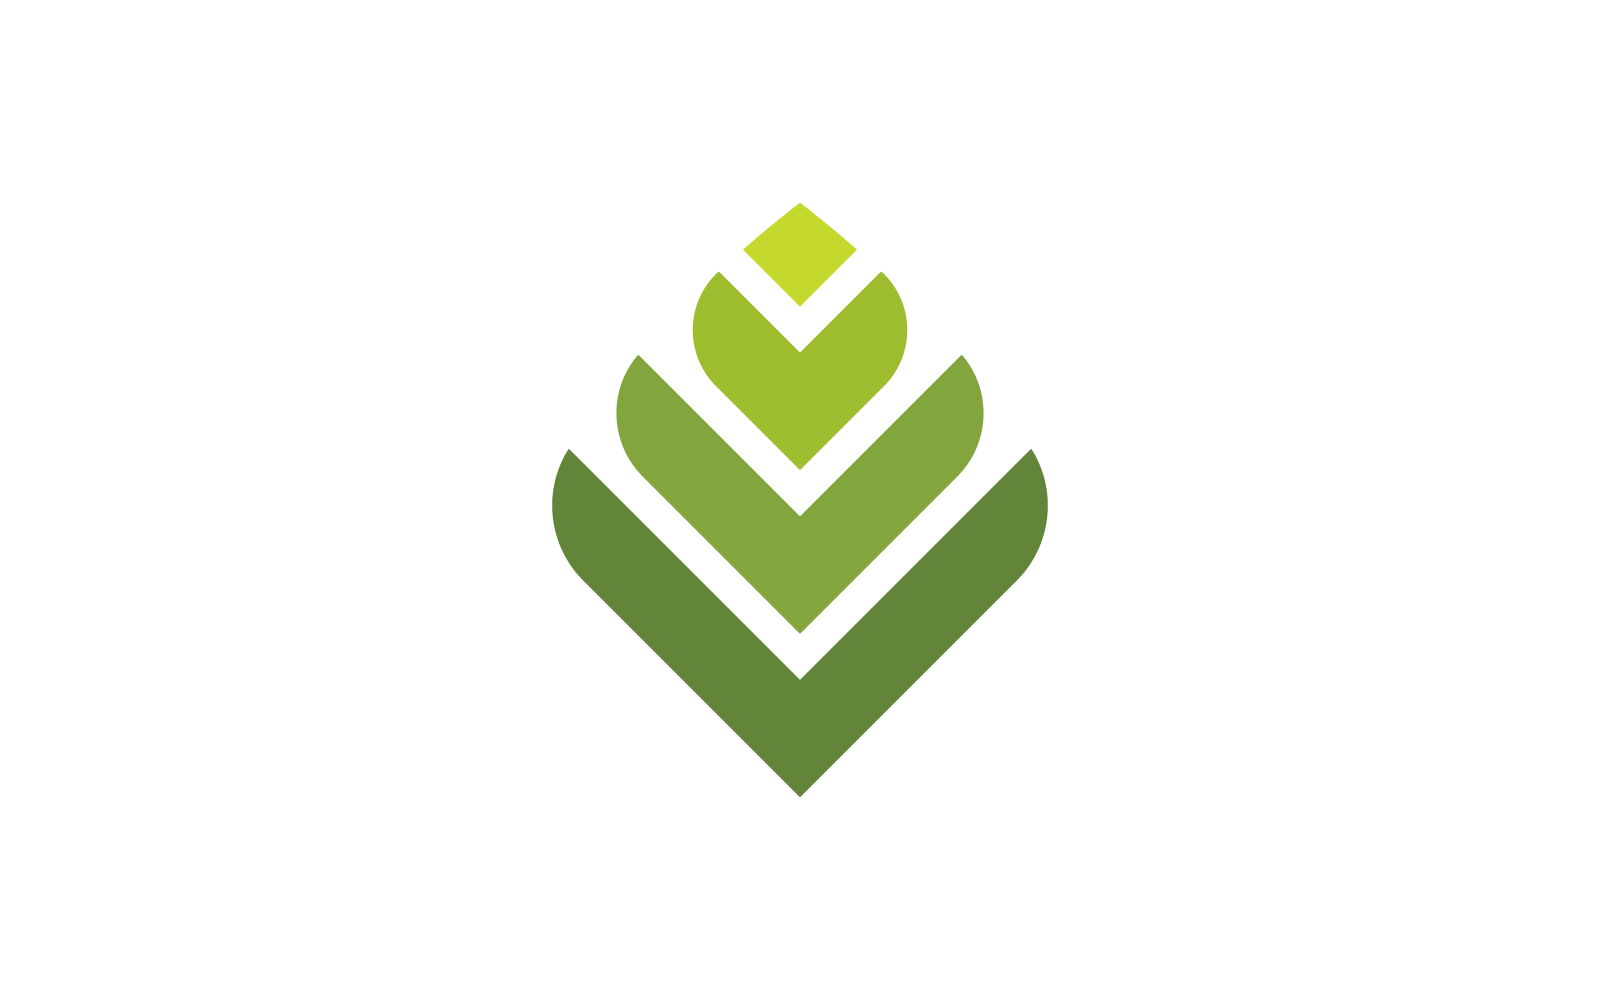 Green leaf illustration logo vector icon design